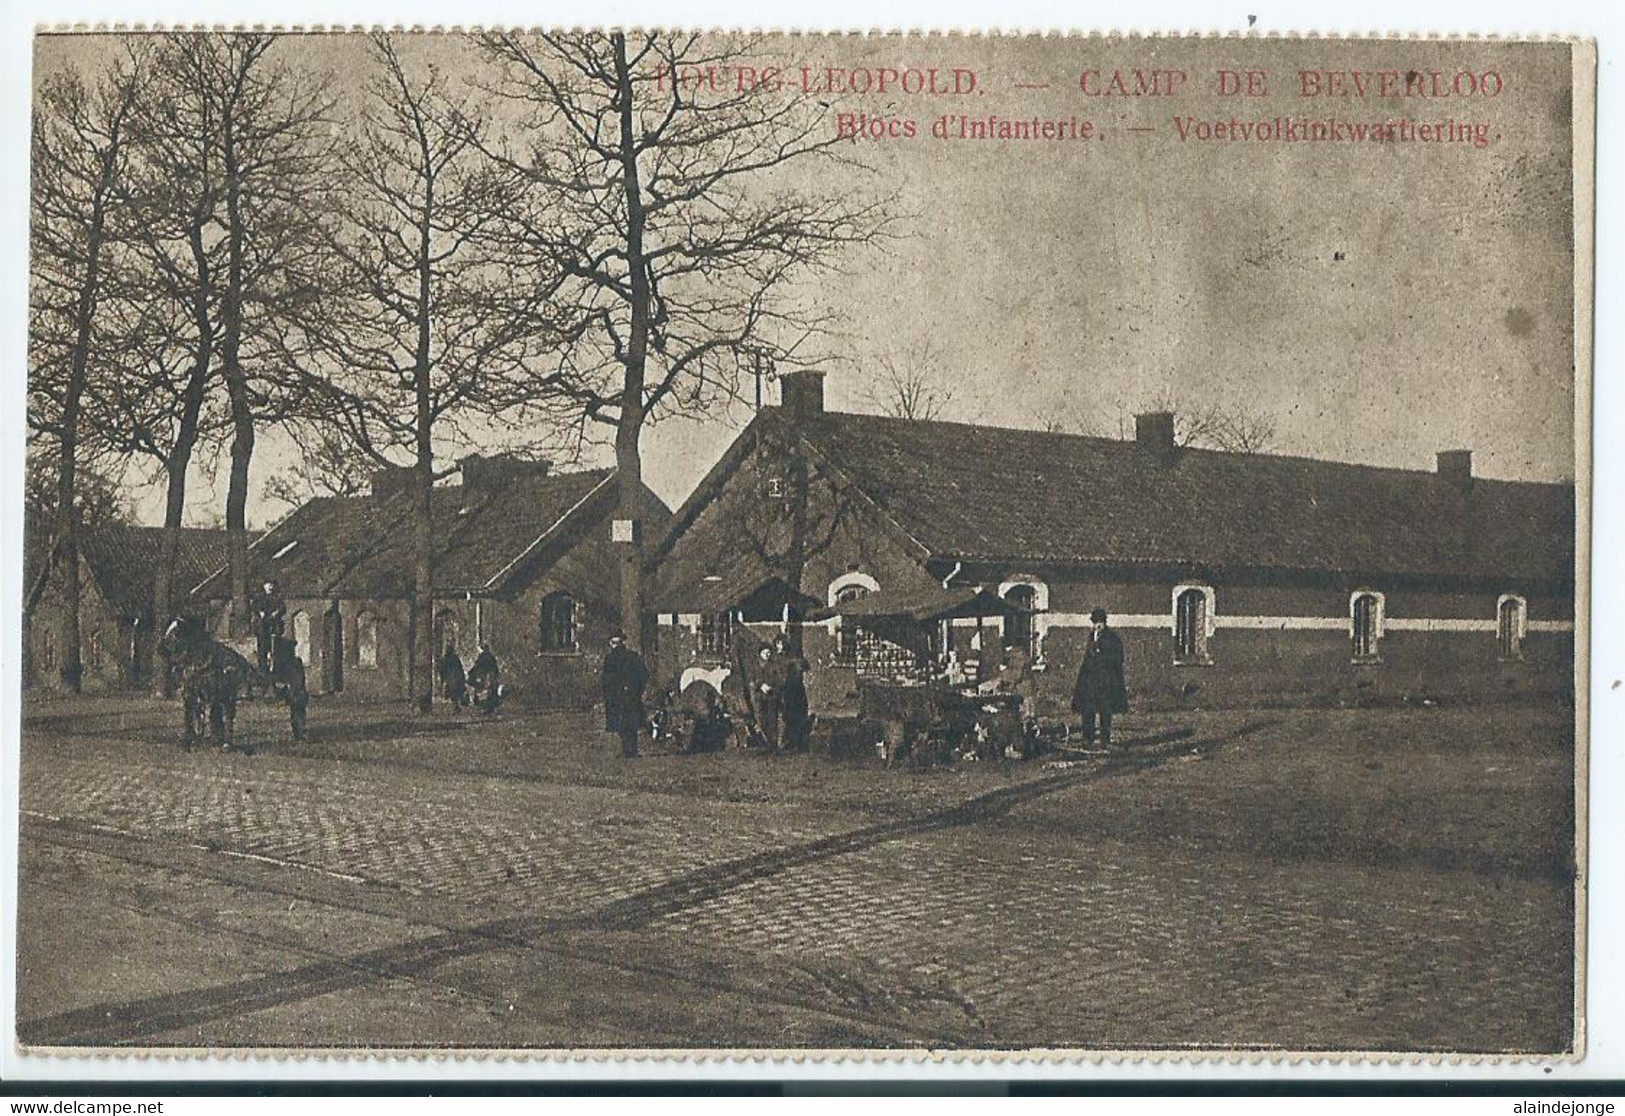 Camp De Beverloo - Blocs D'Infanterie - Voetvolkinkwartiering - 1924 - Leopoldsburg (Camp De Beverloo)